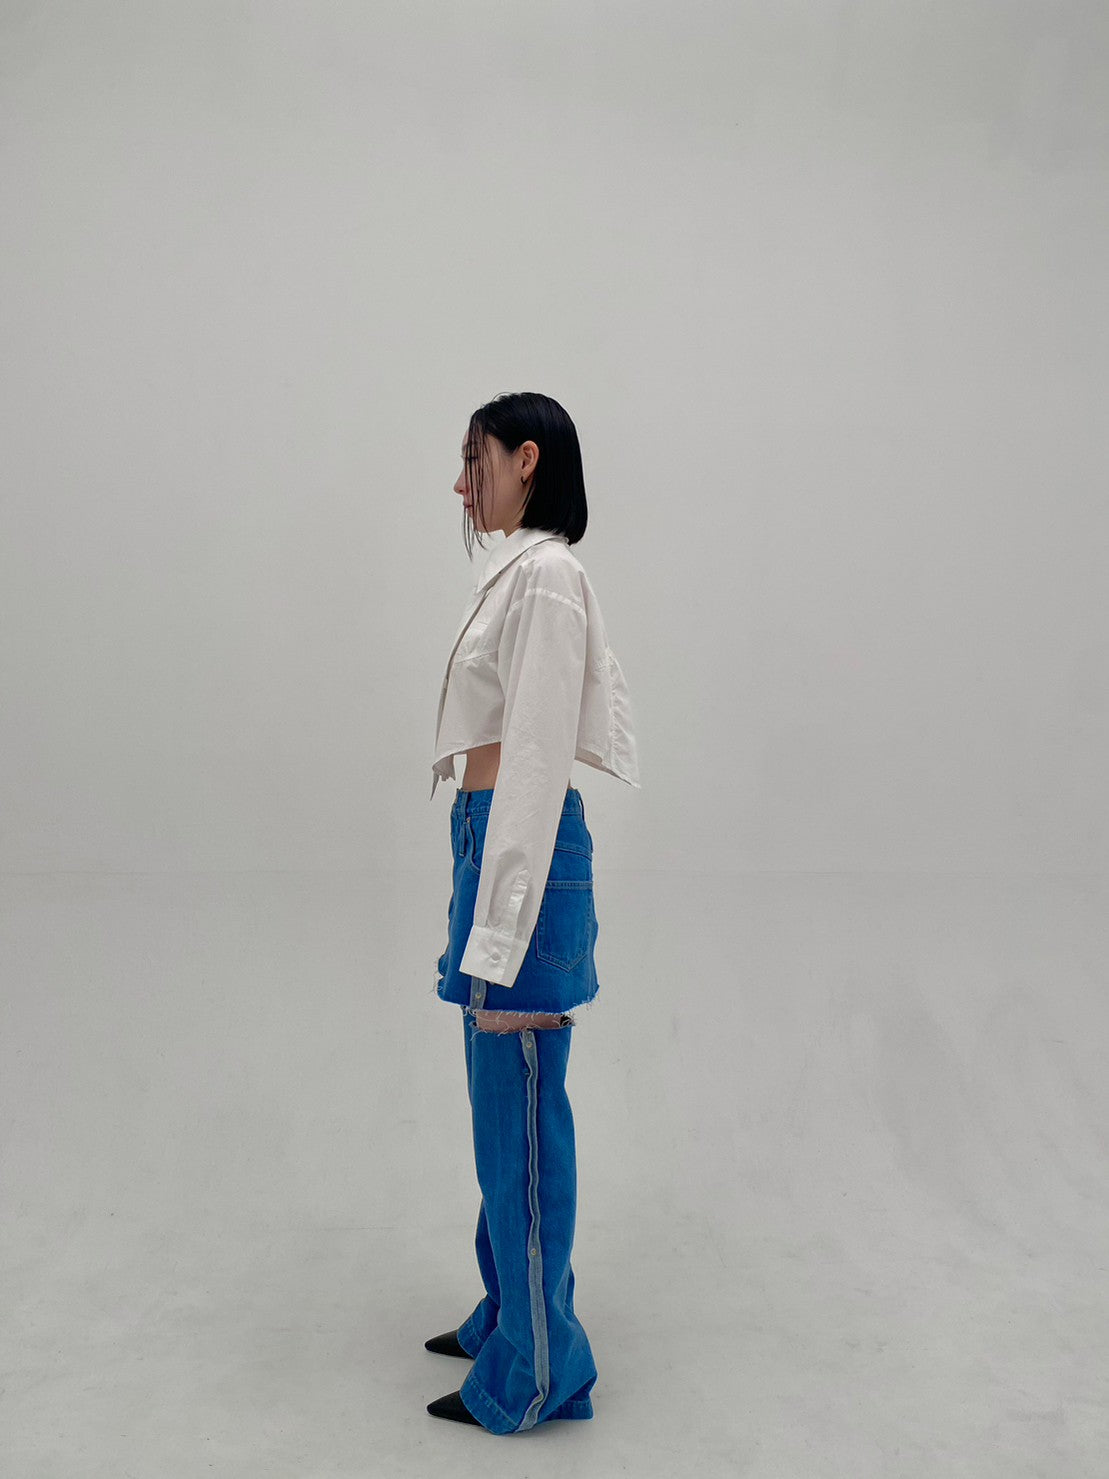 Denim Skirt With Legcover(Blue)